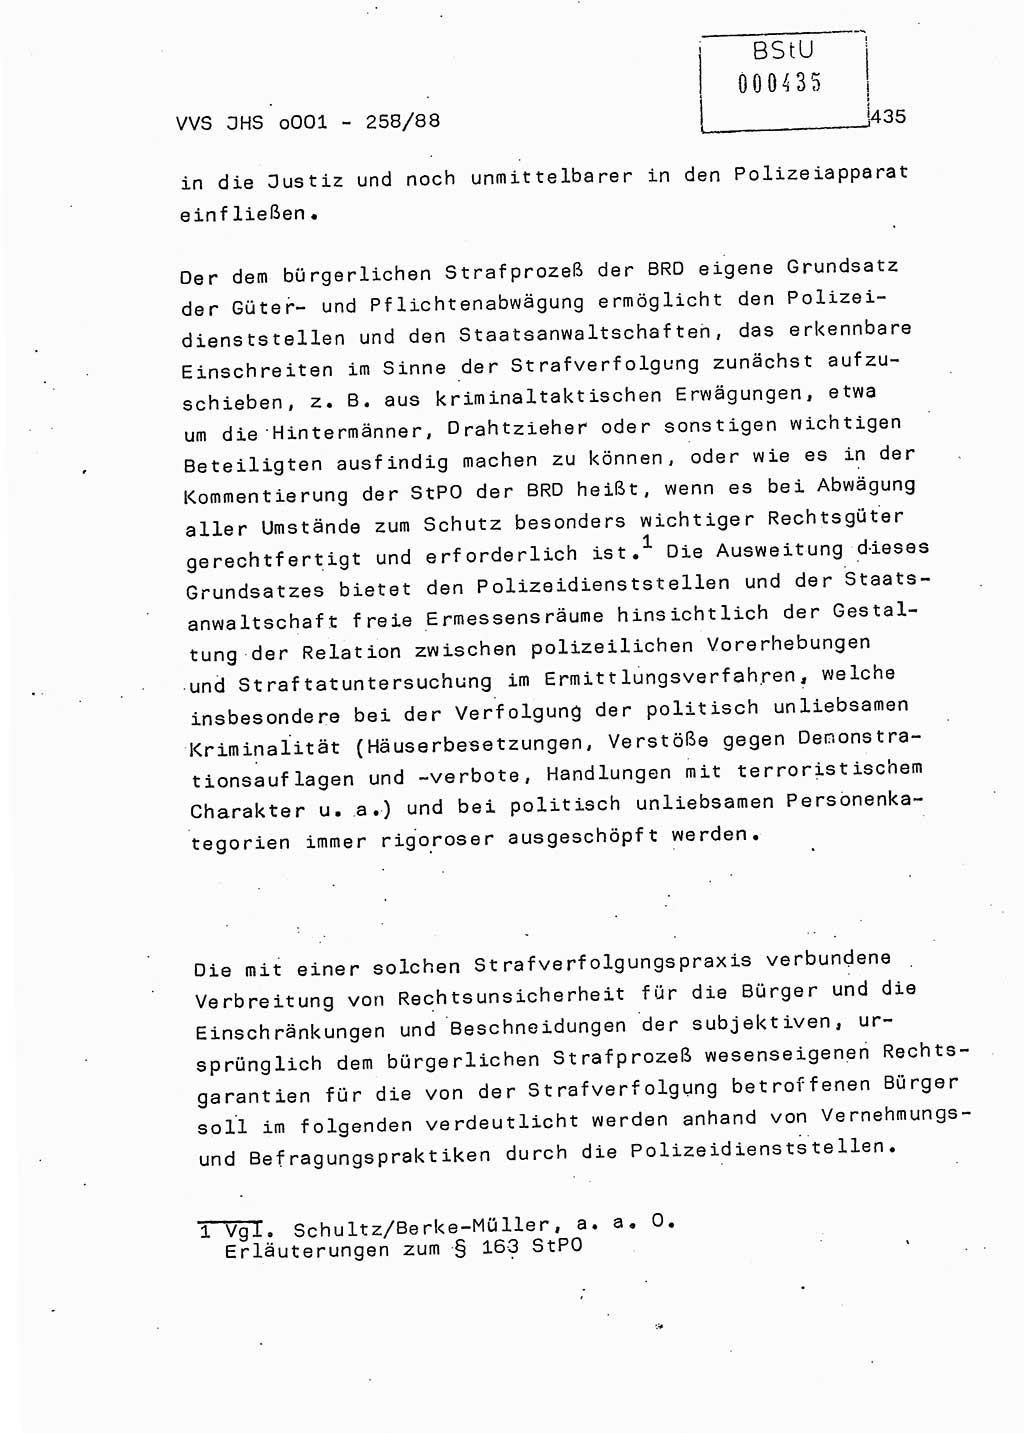 Dissertation, Oberleutnant Uwe Kärsten (JHS), Hauptmann Dr. Joachim Henkel (JHS), Oberstleutnant Werner Mählitz (Leiter der Abt. Ⅸ BV Rostock), Oberstleutnant Jürgen Tröge (HA Ⅸ/AKG), Oberstleutnant Winfried Ziegler (HA Ⅸ/9), Major Wolf-Rüdiger Wurzler (JHS), Ministerium für Staatssicherheit (MfS) [Deutsche Demokratische Republik (DDR)], Juristische Hochschule (JHS), Vertrauliche Verschlußsache (VVS) o001-258/88, Potsdam 1988, Seite 434 (Diss. MfS DDR JHS VVS o001-258/88 1988, S. 434)